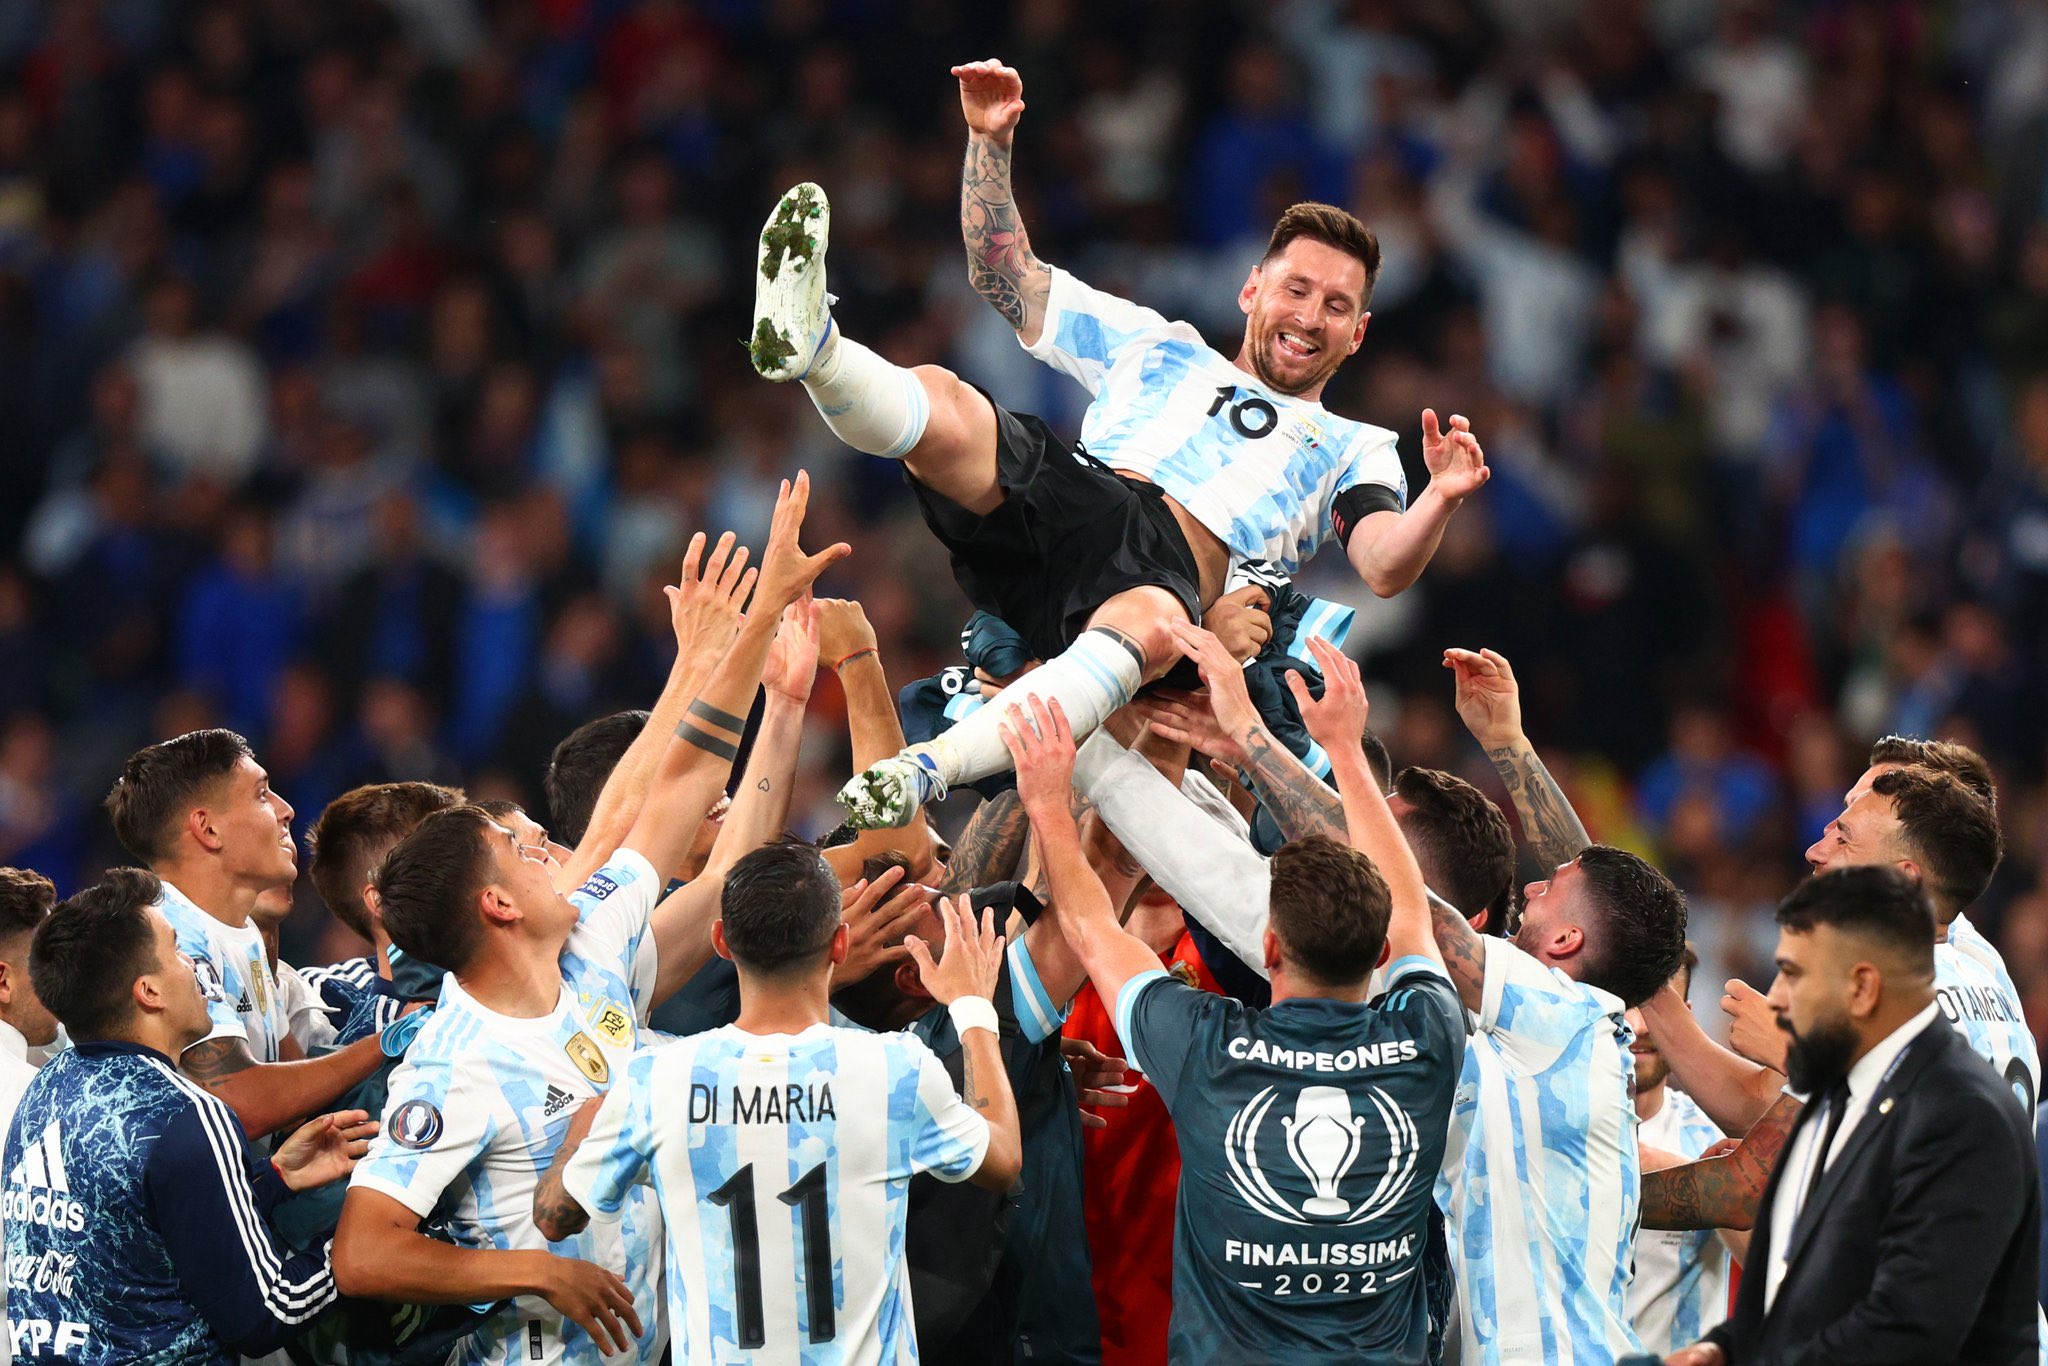 Argentina destrozó a Italia y se consagró campeón de la Finalissima 2022